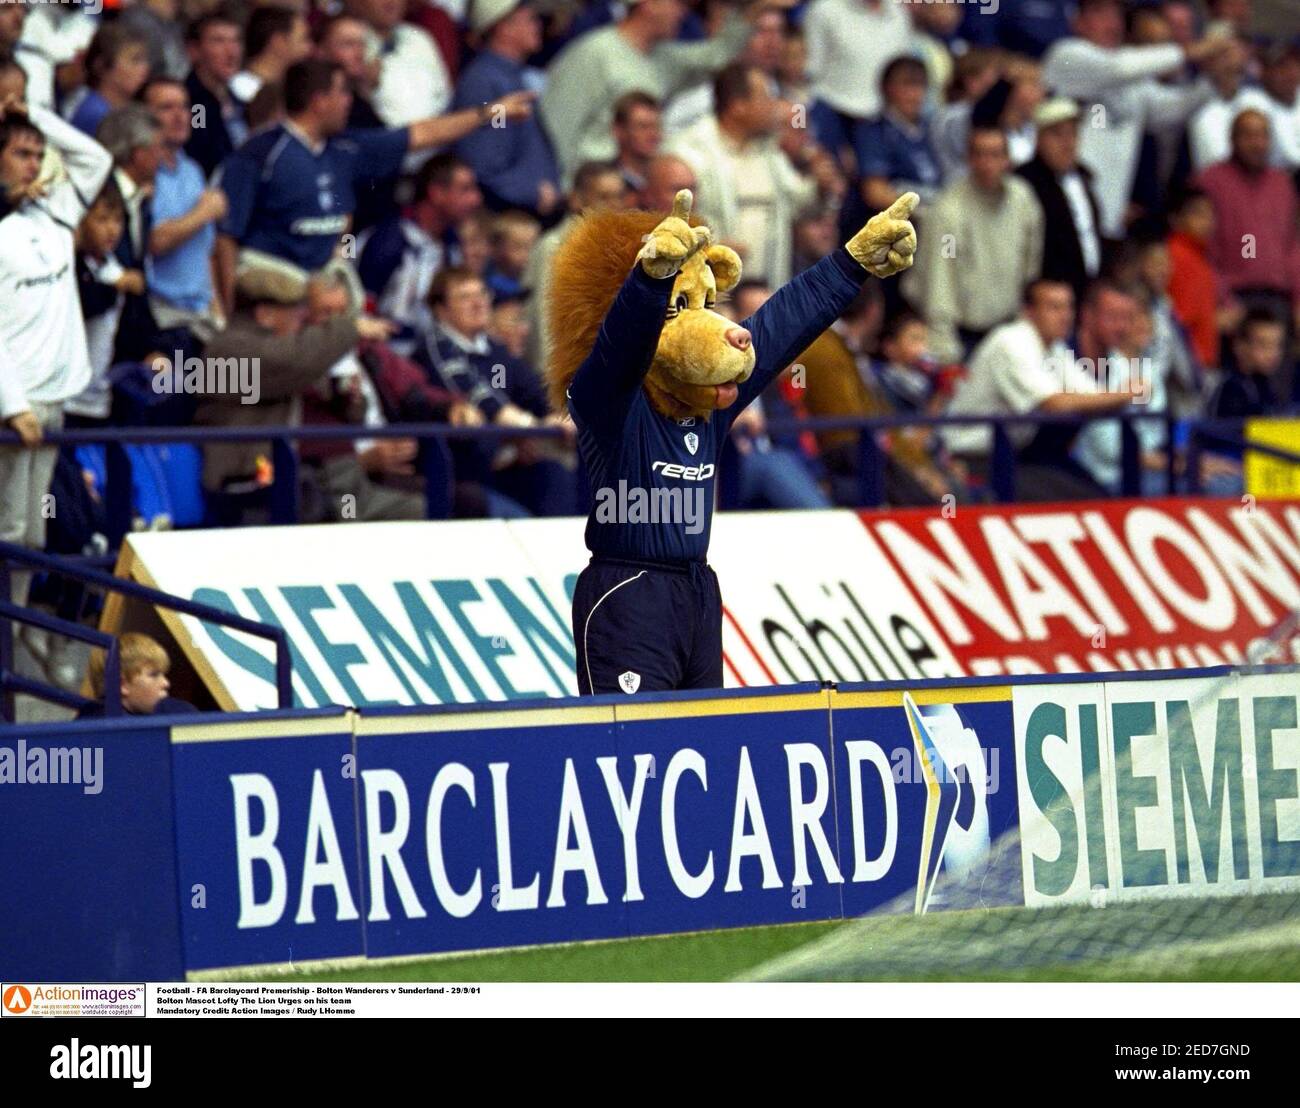 Fútbol - FA Barclaycard Premeriship - Bolton Wanderers v Sunderland - 29/9/01 Bolton Mascot Lofty el León insta a su equipo crédito obligatorio: Acción Imágenes / Rudy Lhomme Foto de stock